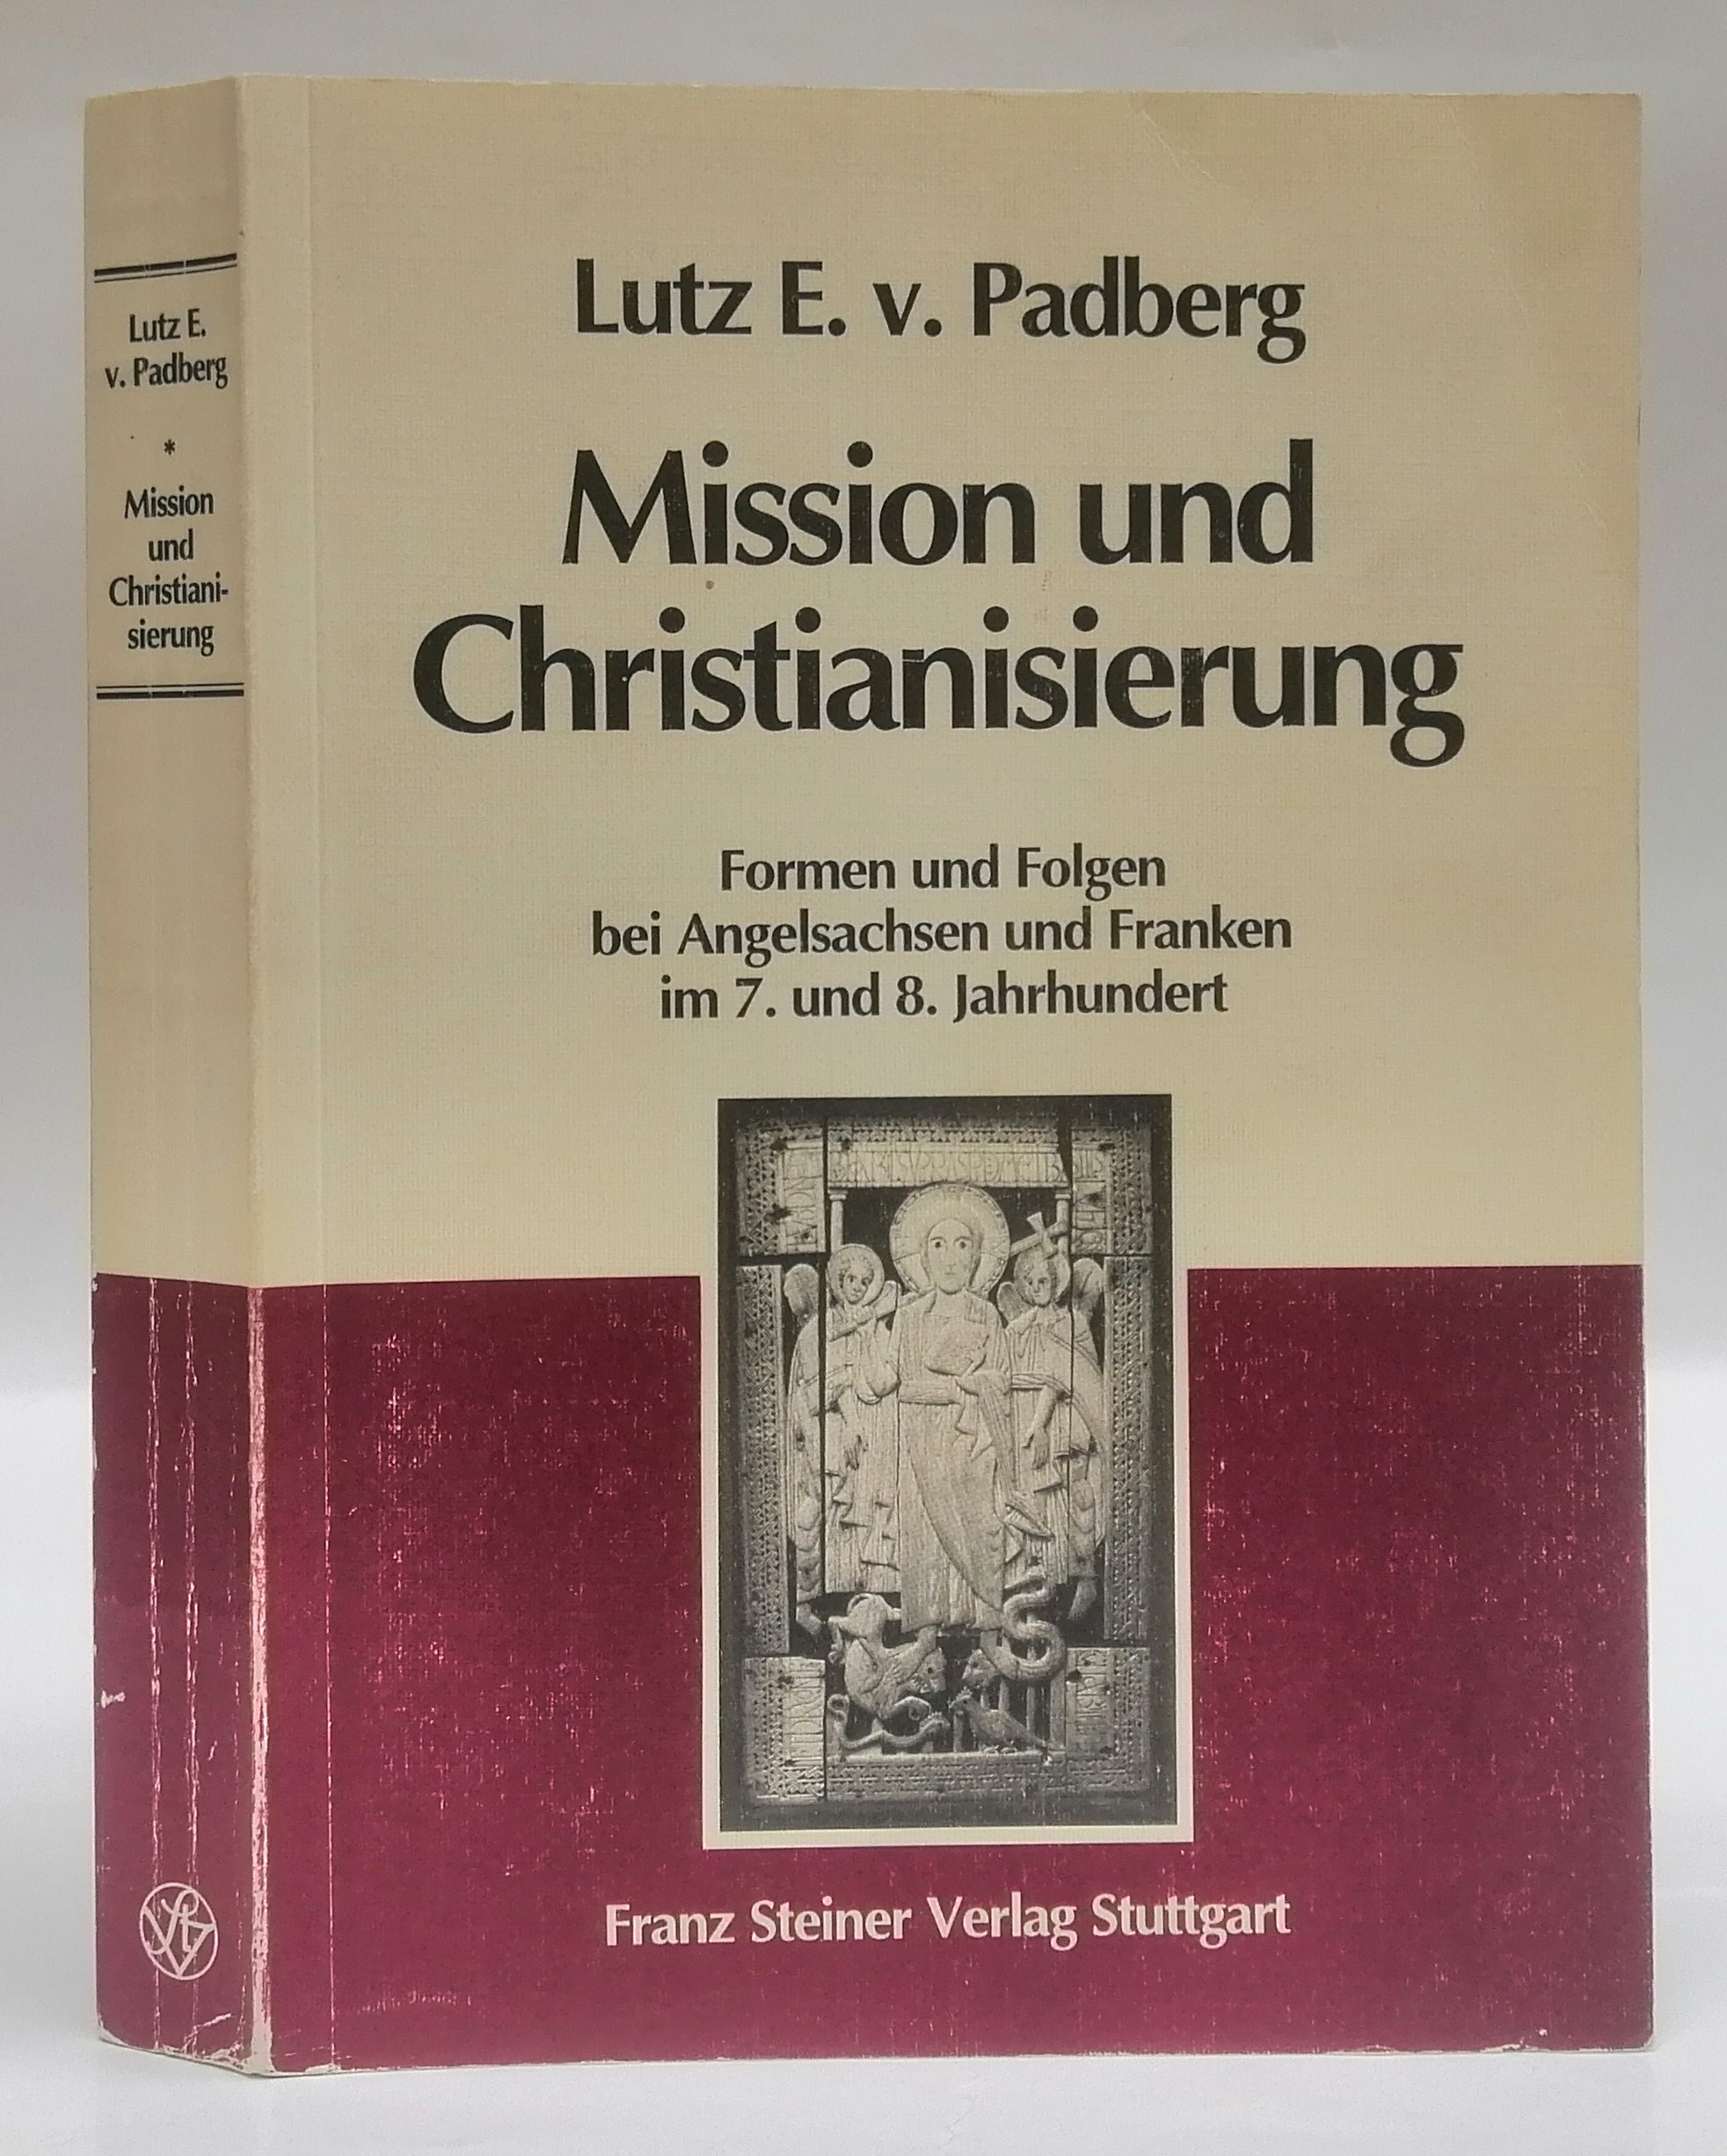 Mission und Christianisierung. Formen und Folgen bei Angelsachsen und Franken im 7. und 8. Jahrhundert. - Padberg, Lutz E. v.